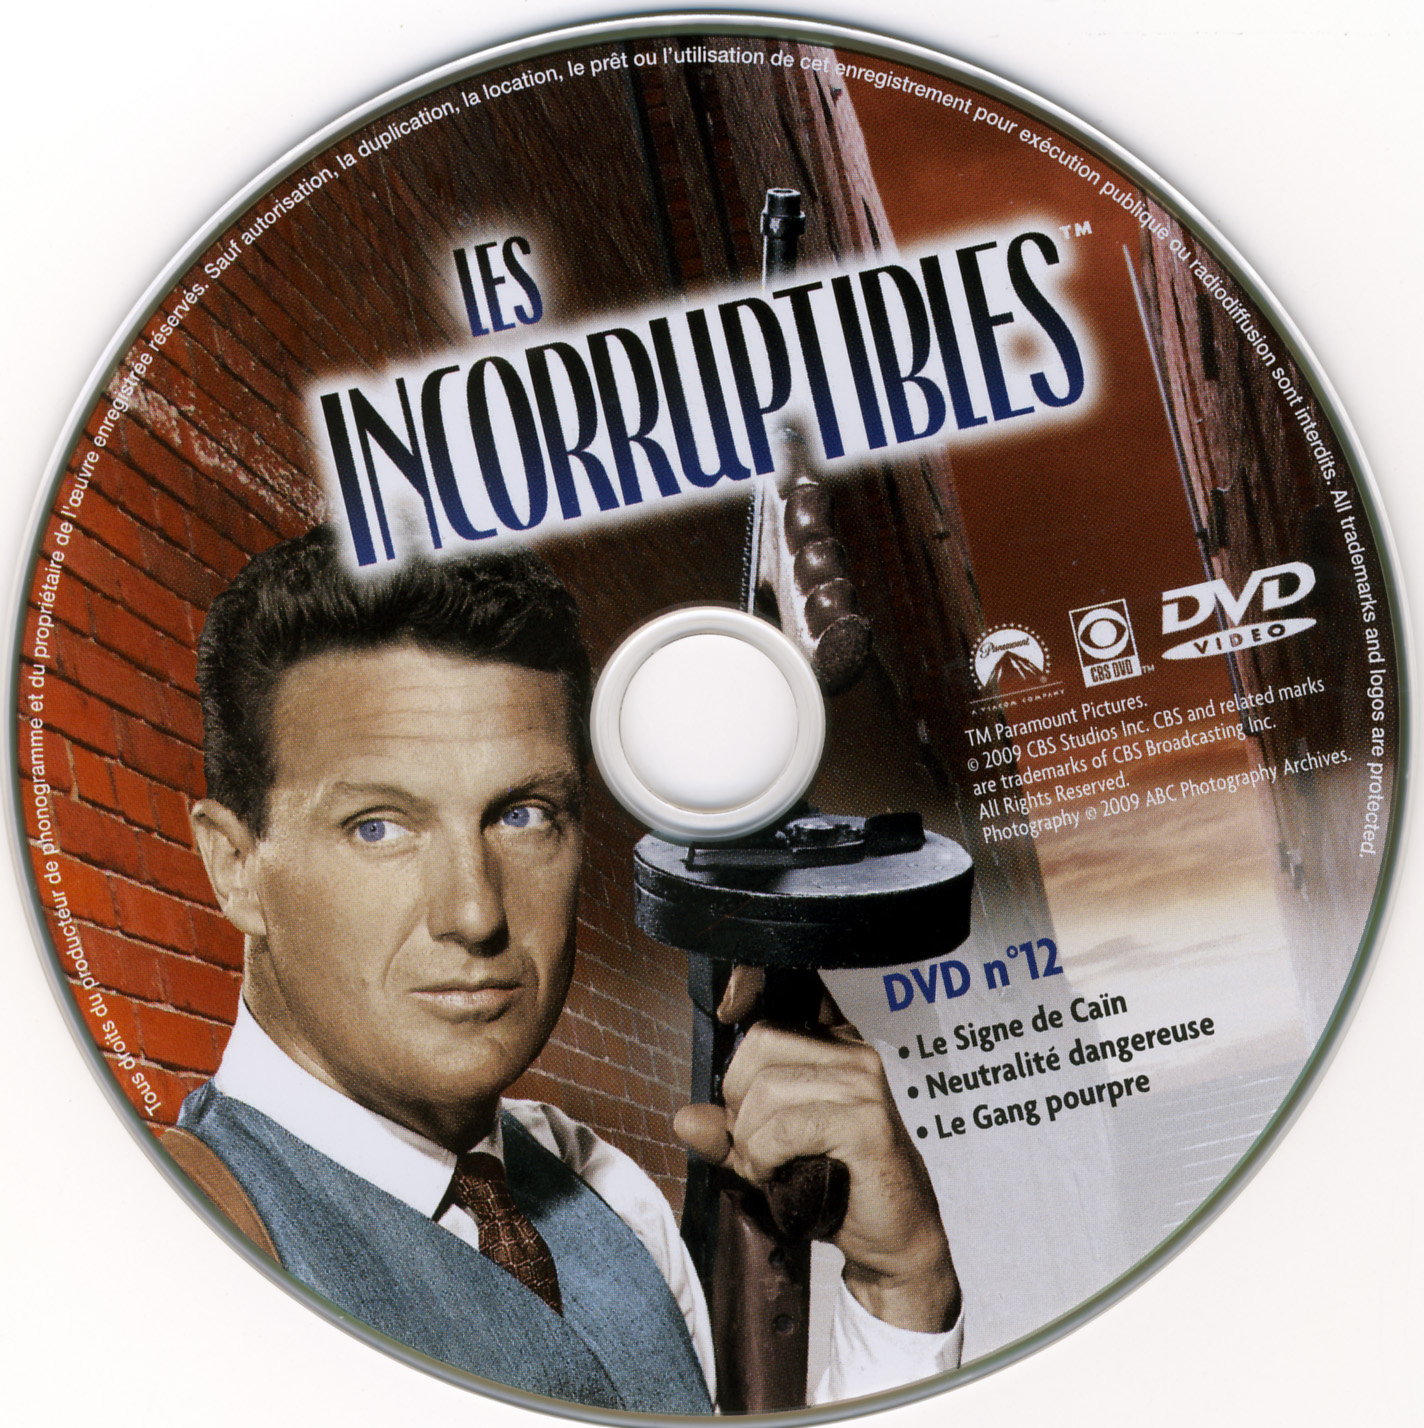 Les incorruptibles intgrale DVD 12